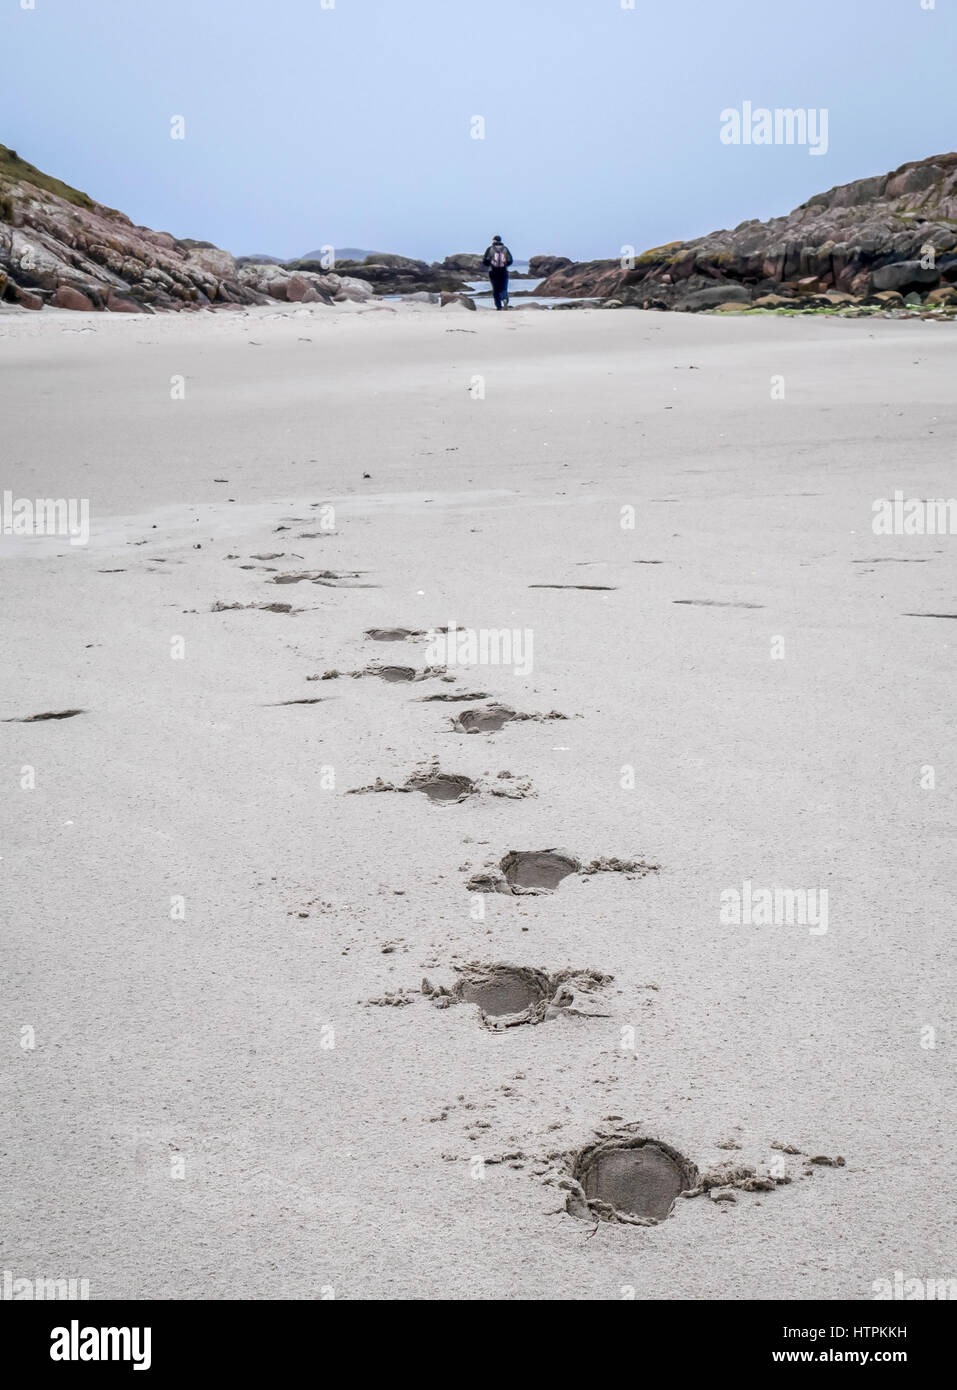 Orme nella sabbia bianca che portano a distanza con uomo solitario a piedi, Isle of Mull, Scotland, Regno Unito Foto Stock